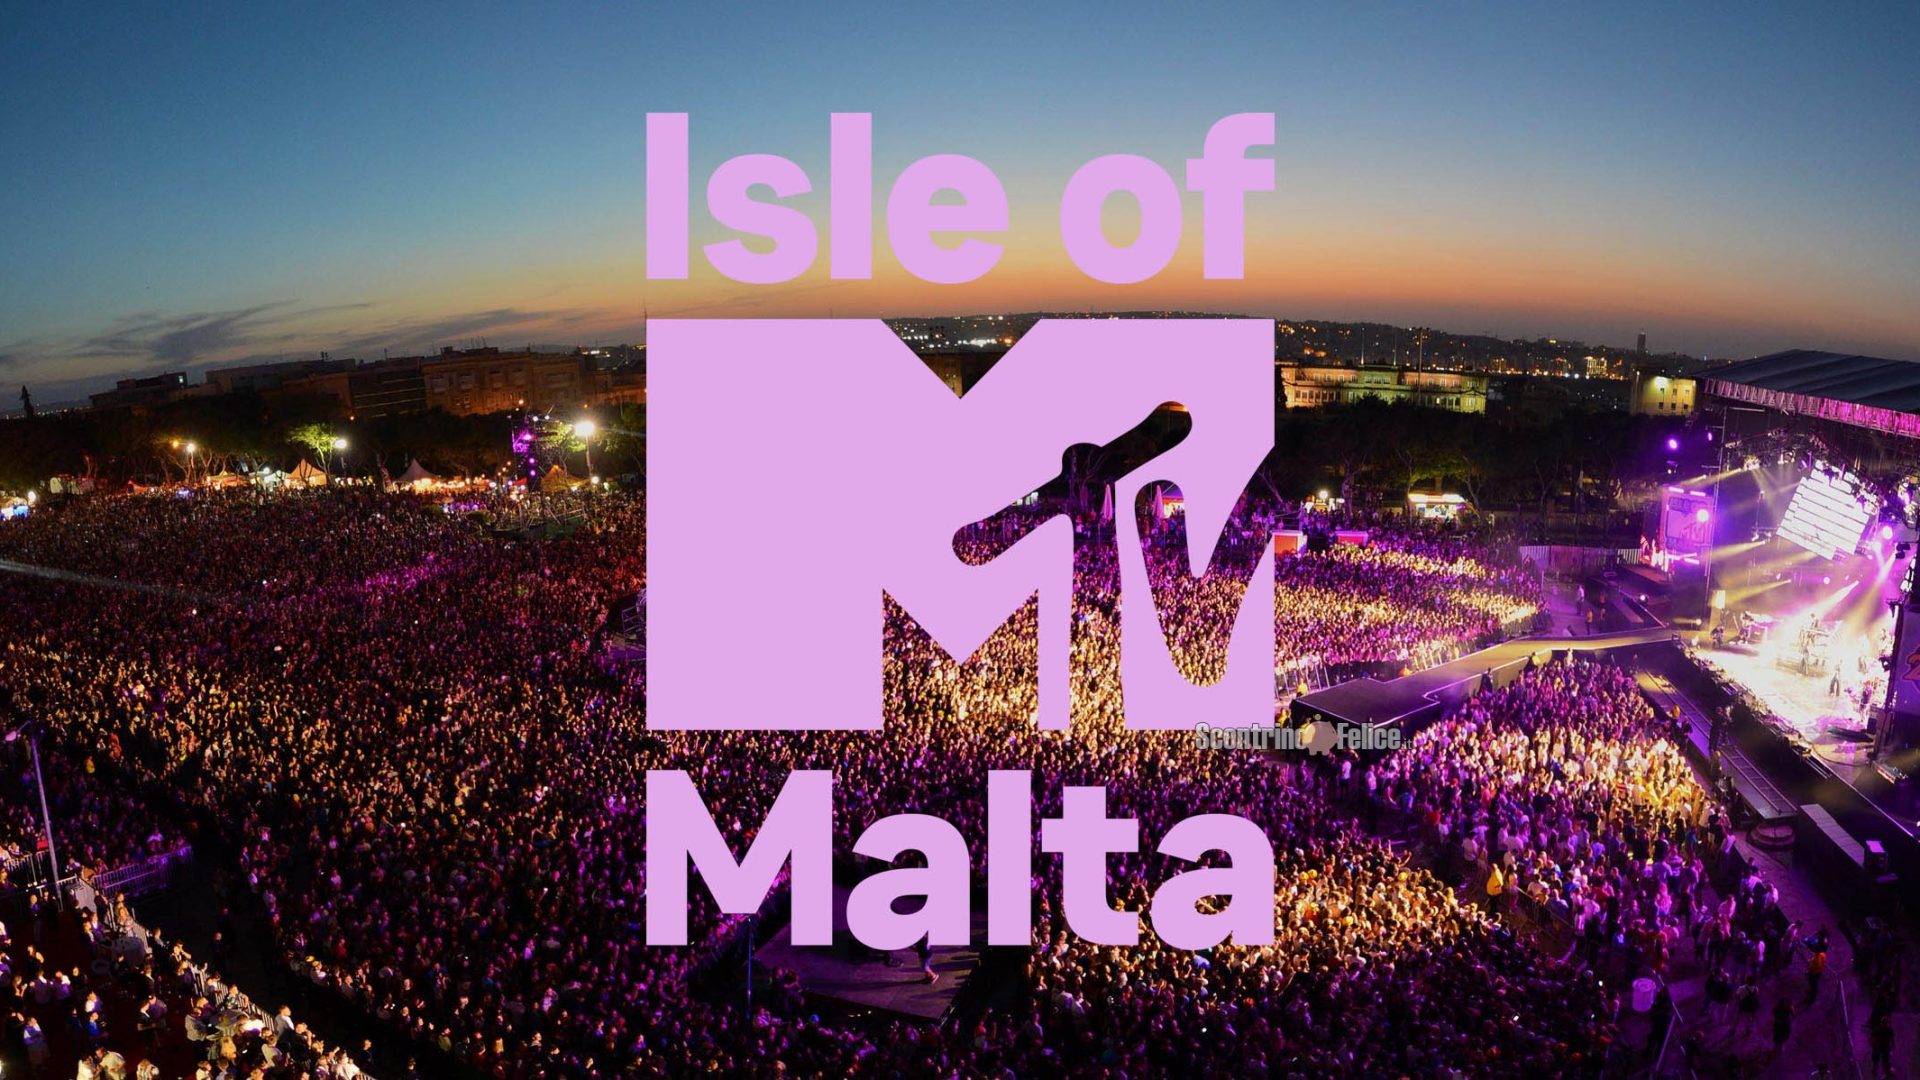 Vinci GRATIS un viaggio a Malta con Isle of MTV